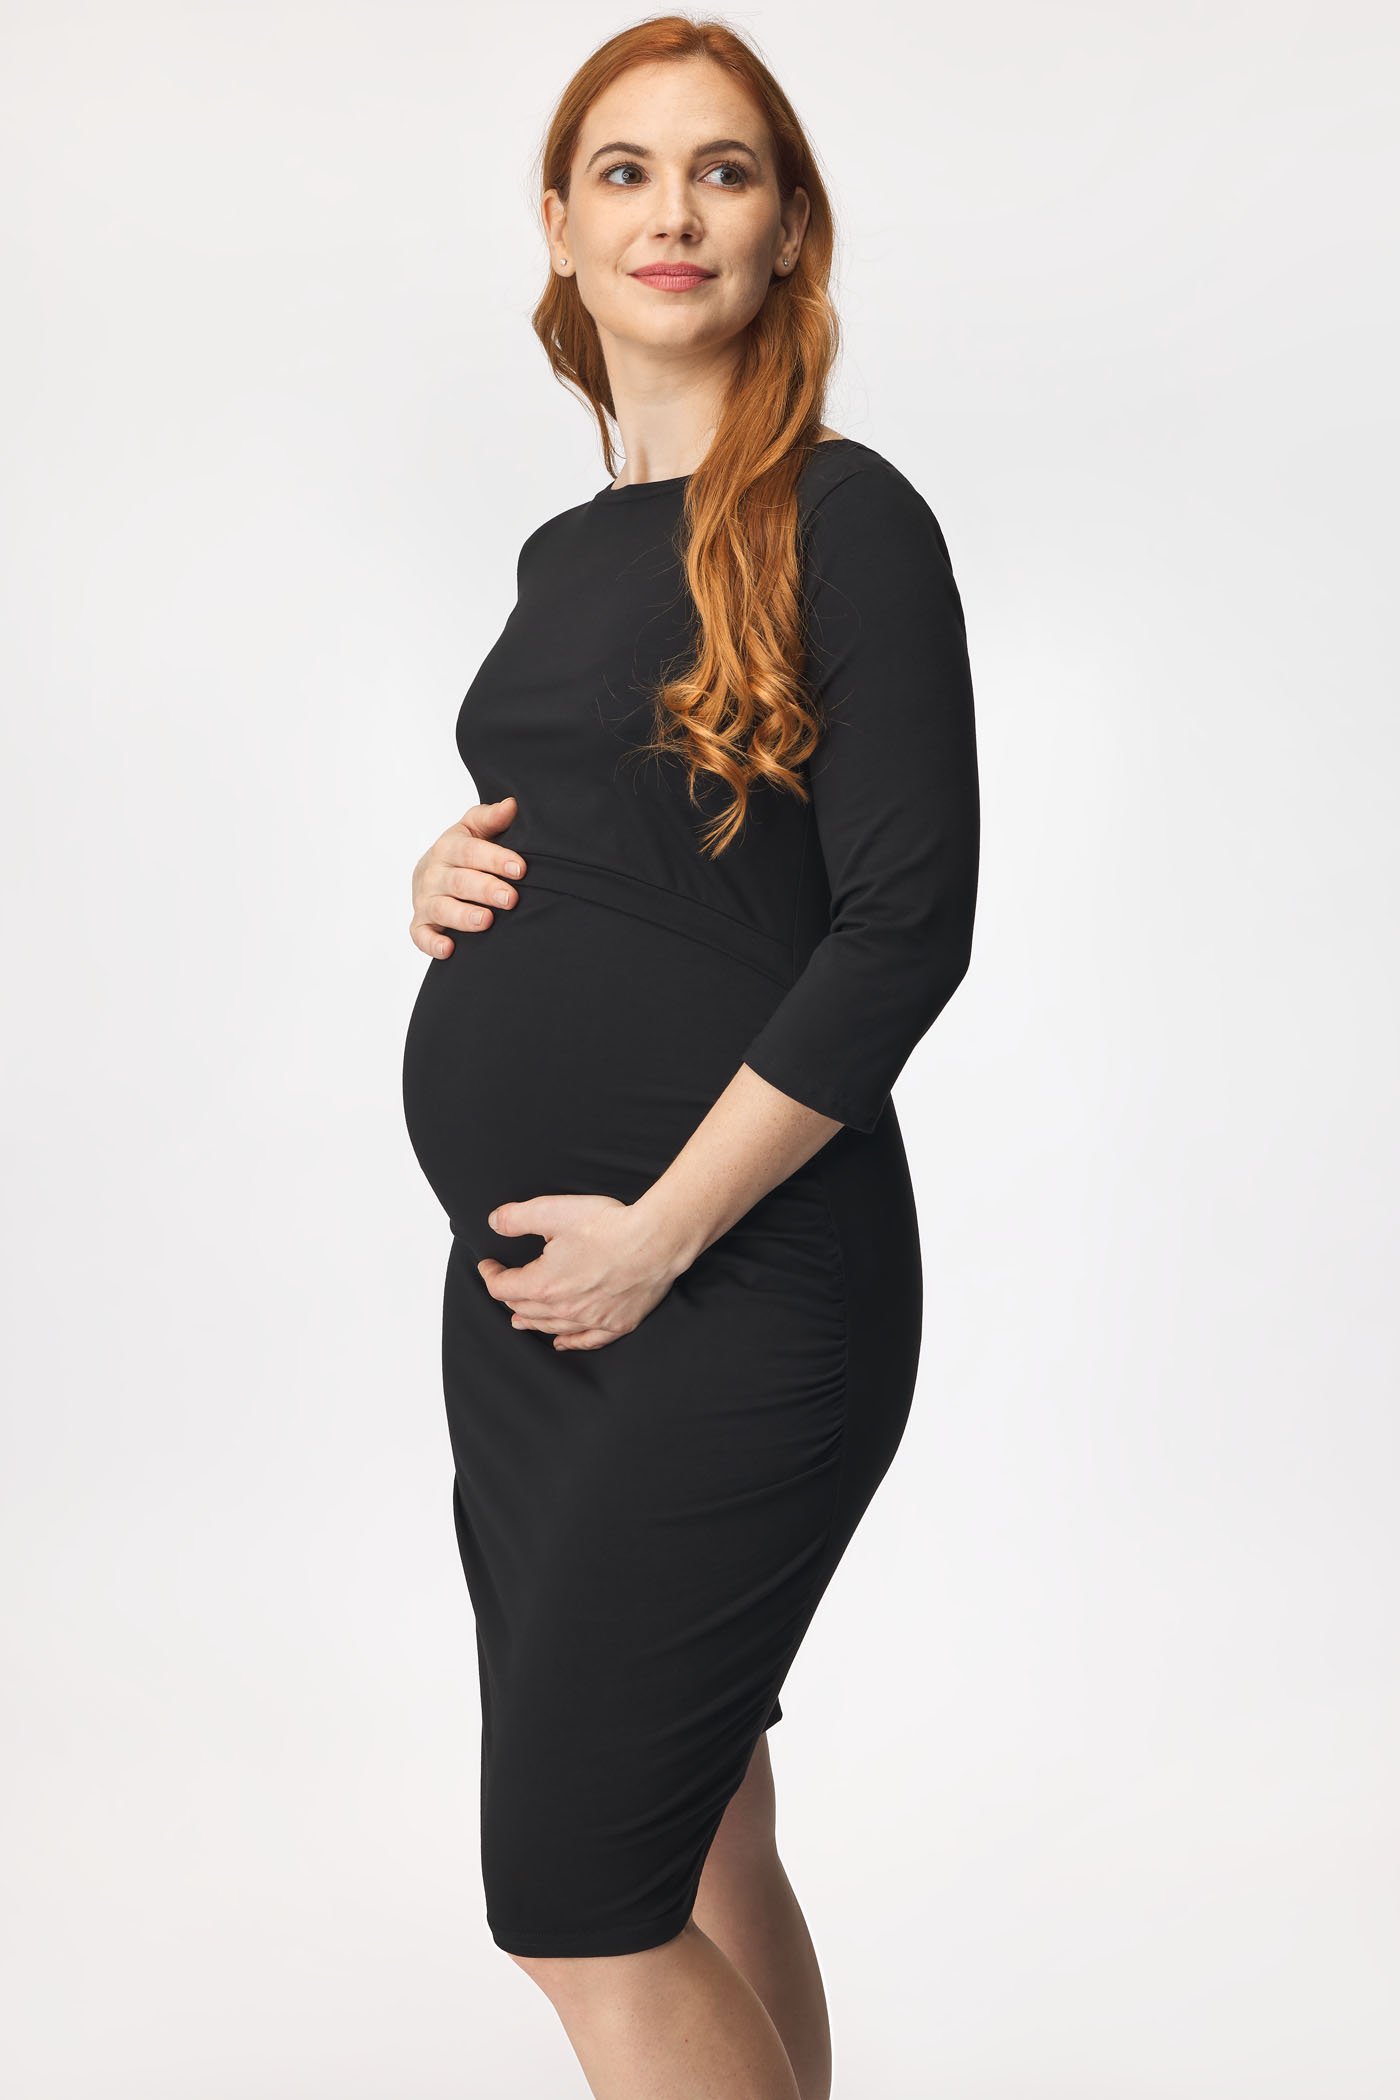 Φόρεμα εγκυμοσύνης και θηλασμού Angela | Astratex.gr